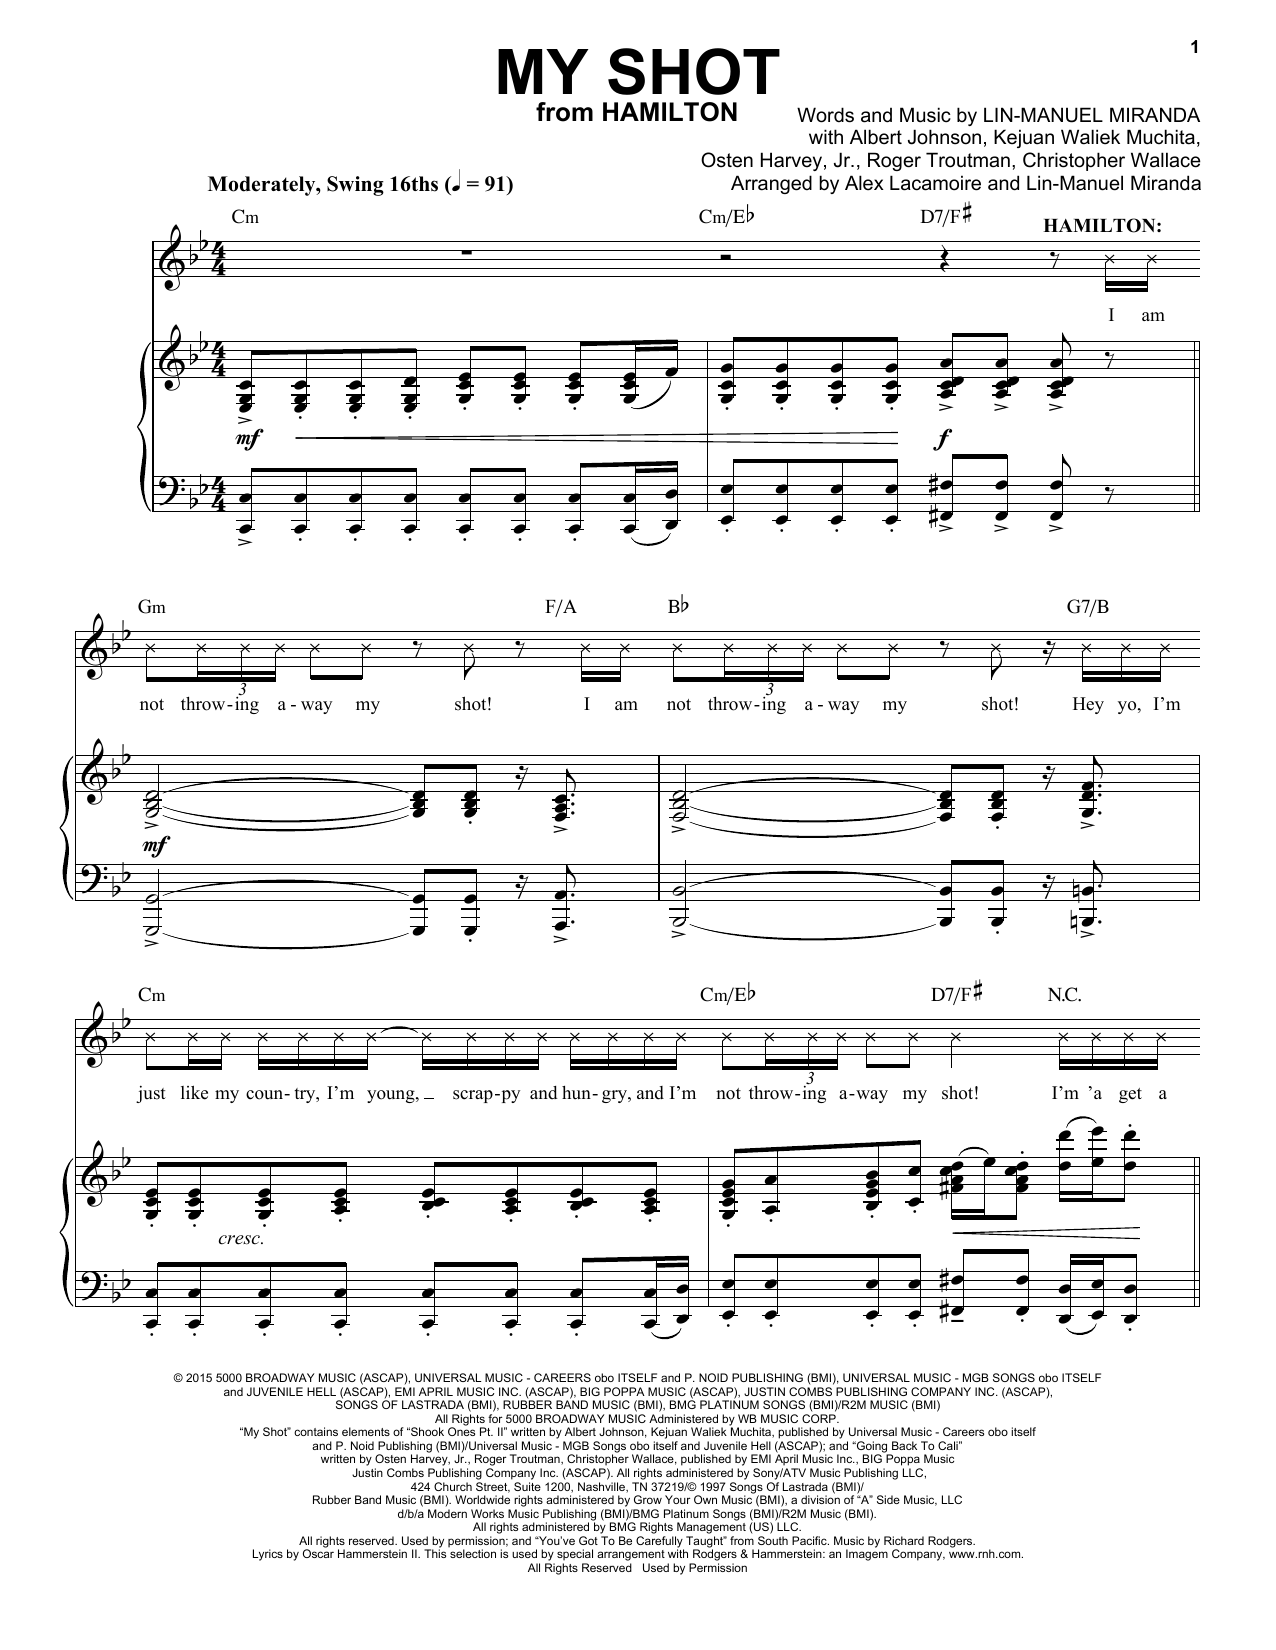 Lin-Manuel Miranda My Shot (from Hamilton) Sheet Music Notes & Chords for Big Note Piano - Download or Print PDF